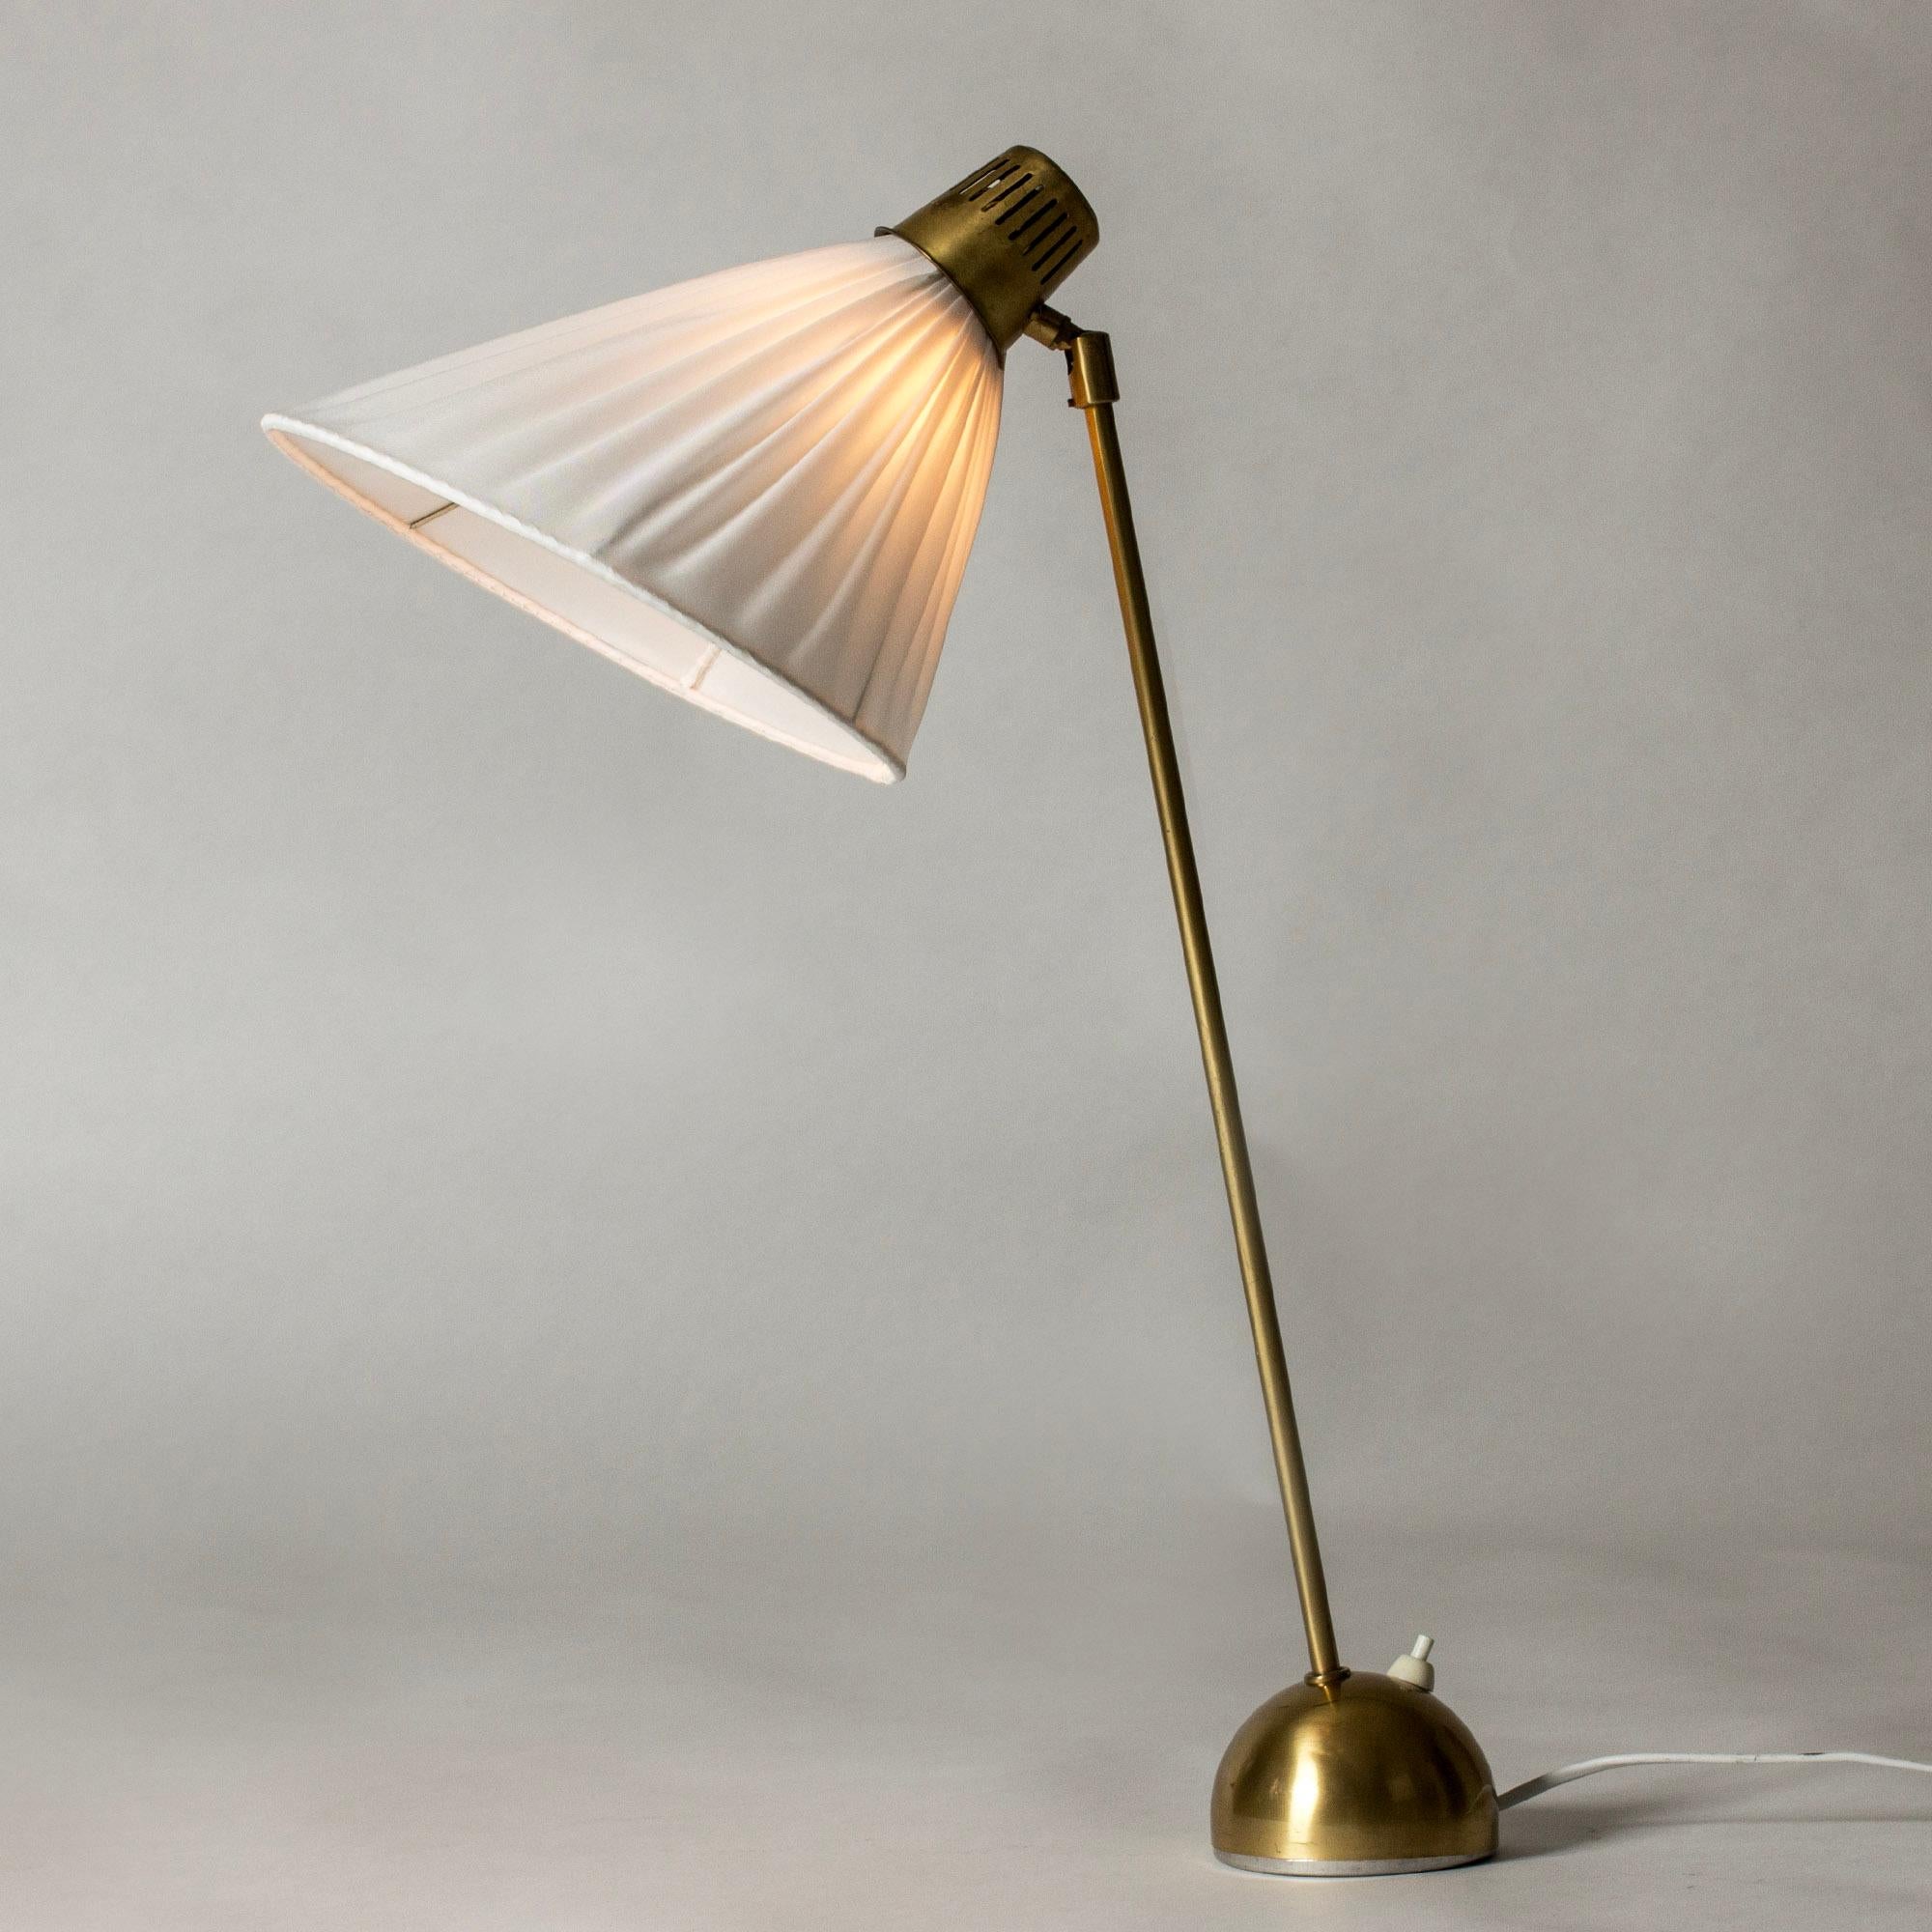 Élégante lampe de table ou de bureau en laiton de Hans Bergström avec une tige allongée et un abat-jour réglable. Base arrondie, belle silhouette.